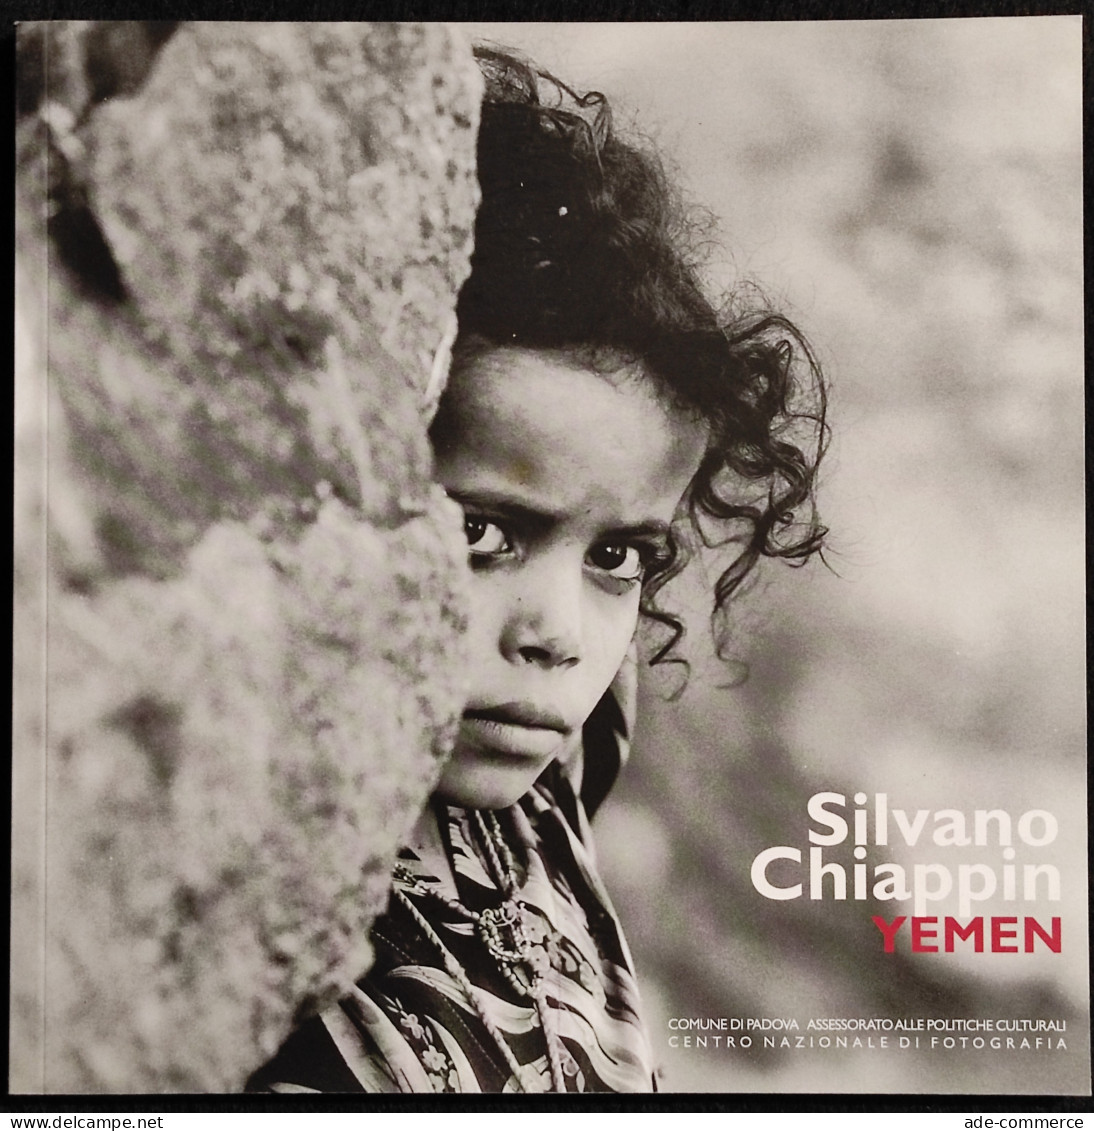 Silvano Chiappin - Yemen - E. Gusella - 2006 - Fotografia - Fotografía